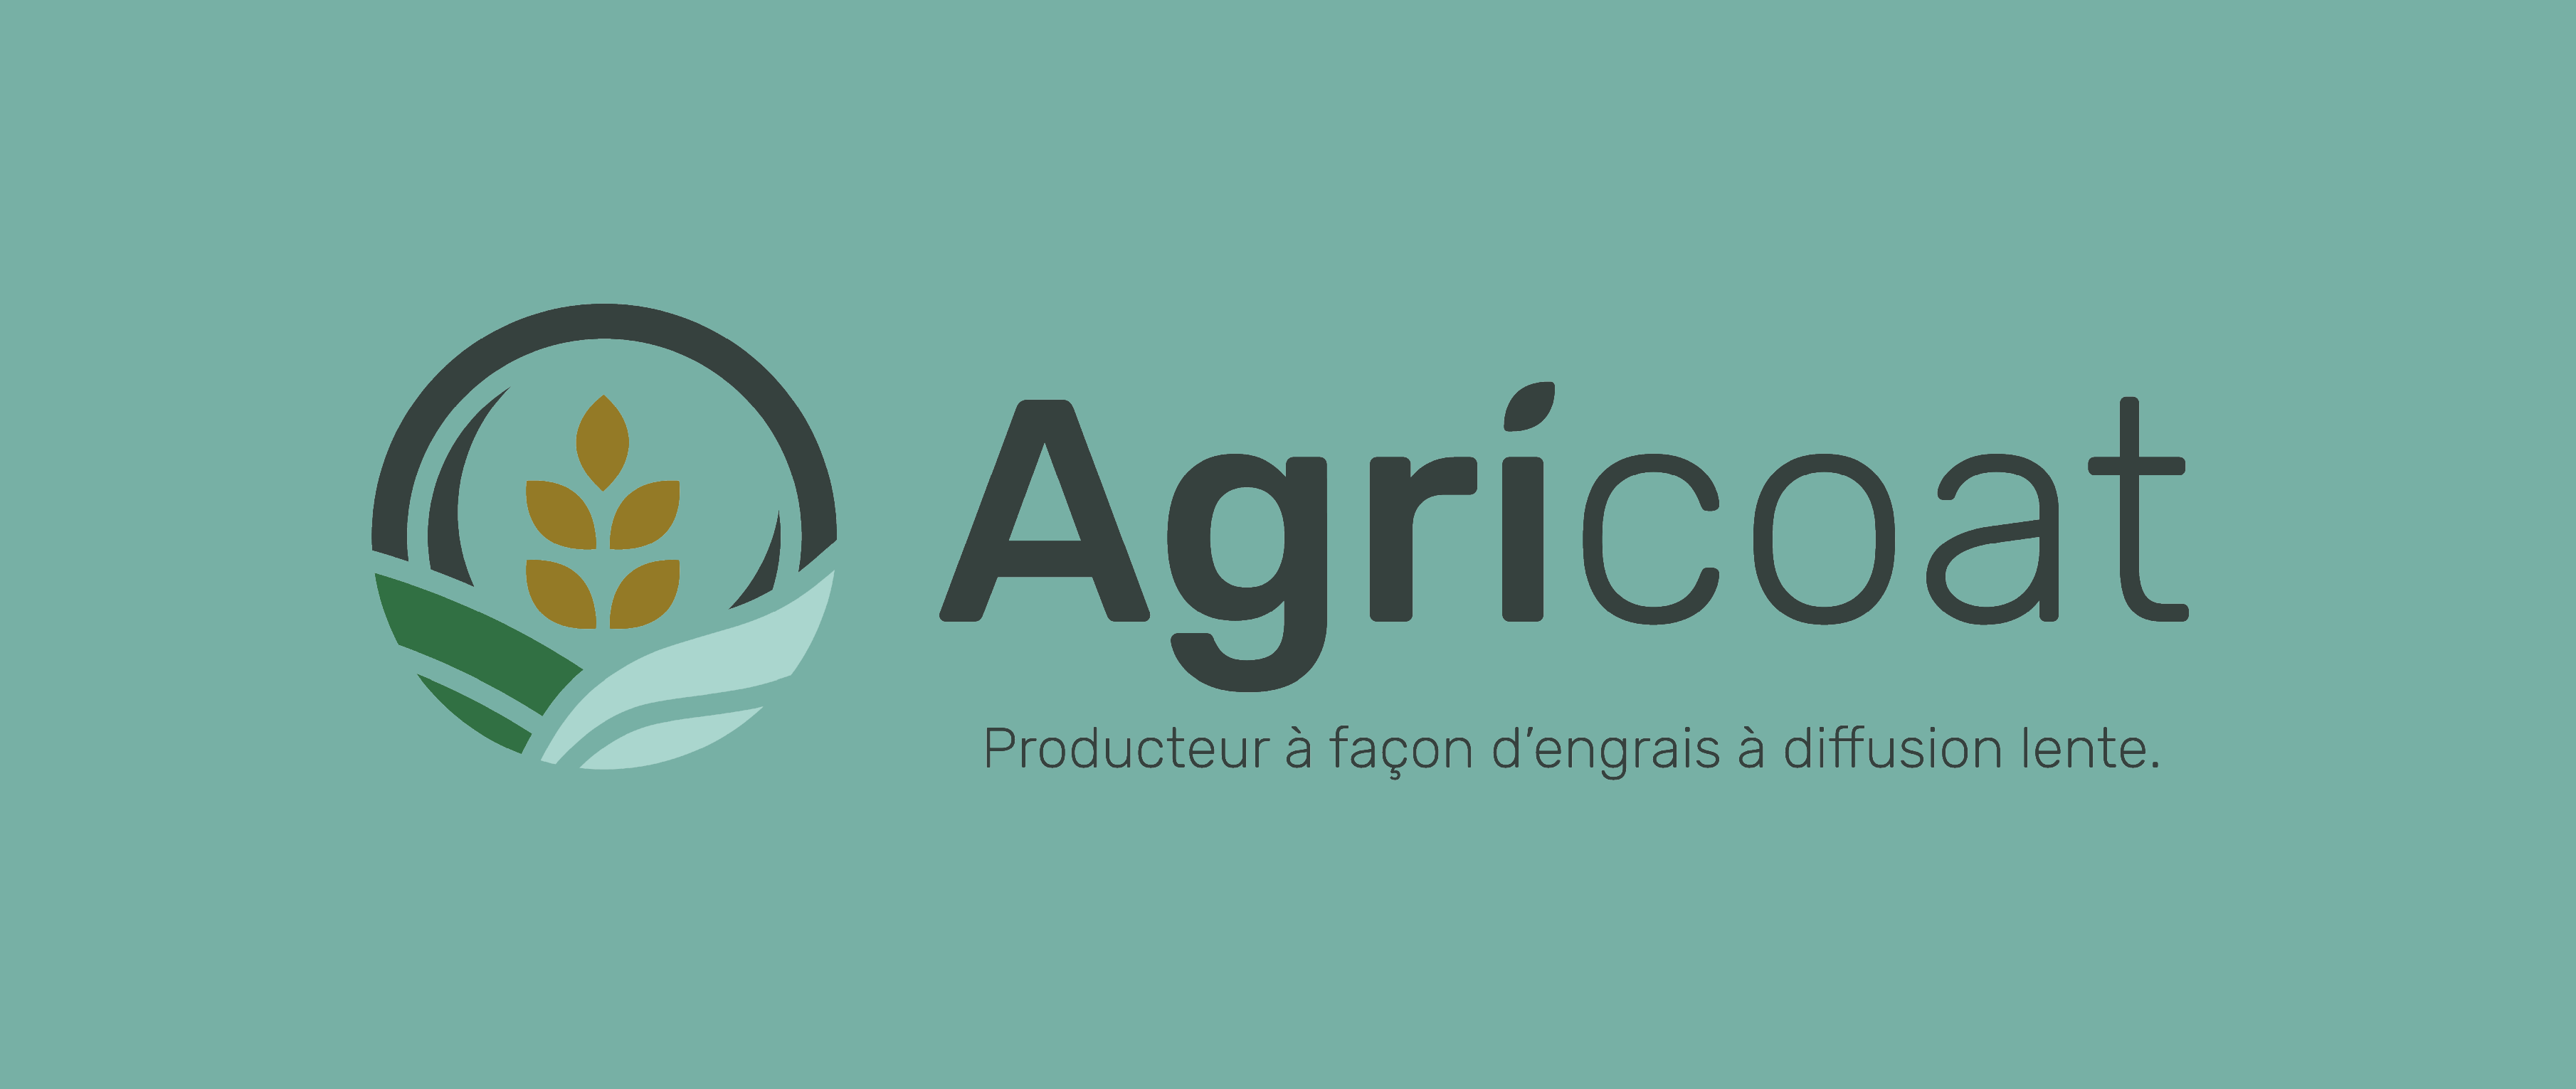 logo horizontal agricoat